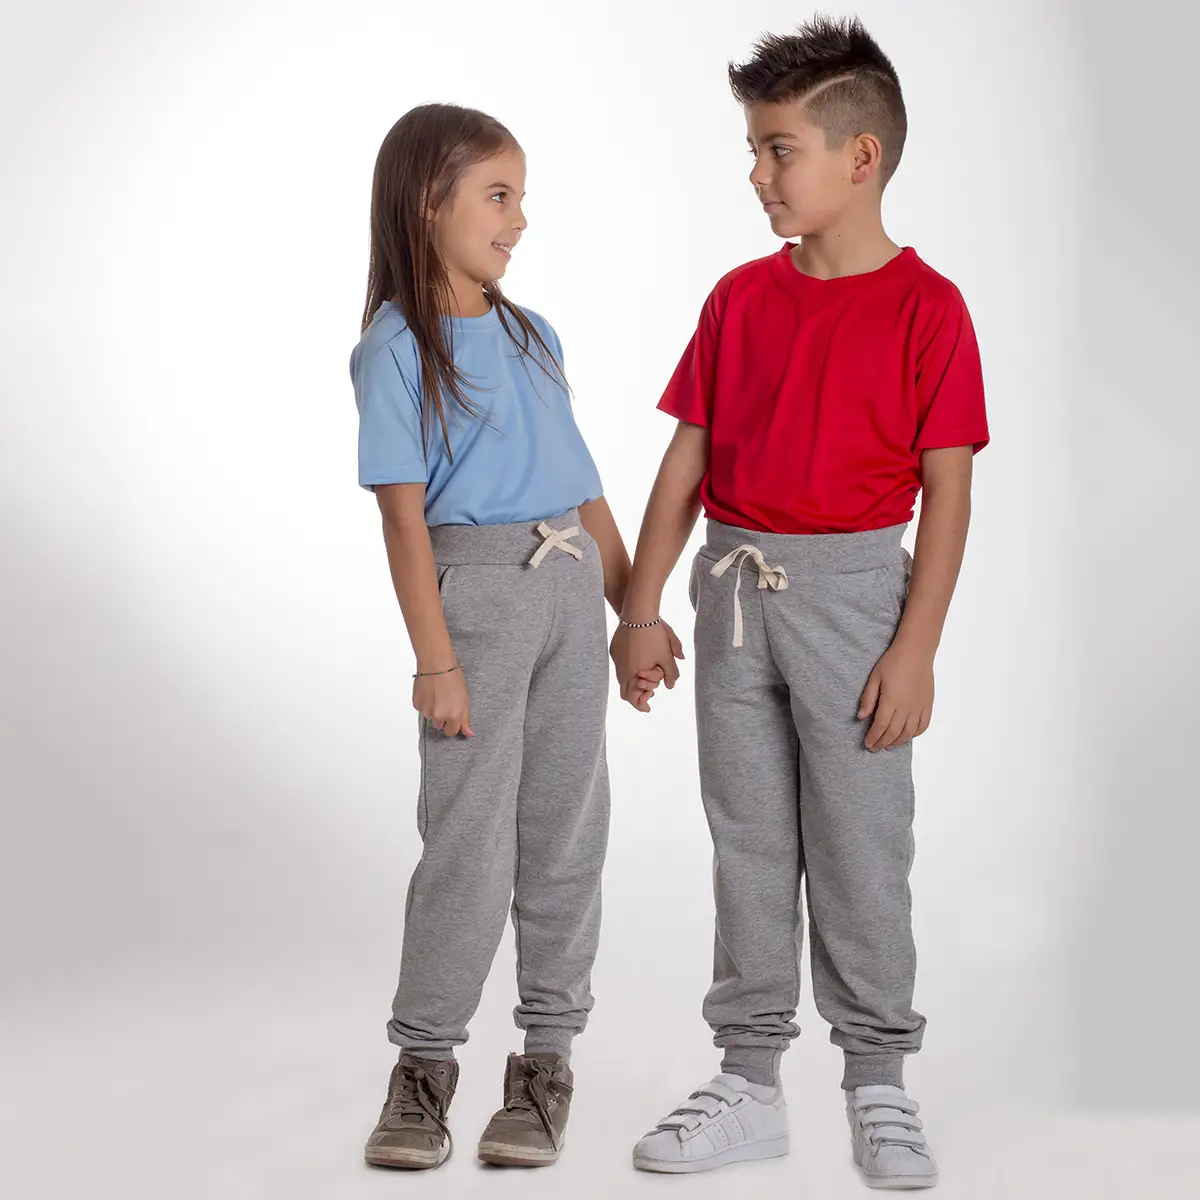 Pantalone Kids Pants with cuff